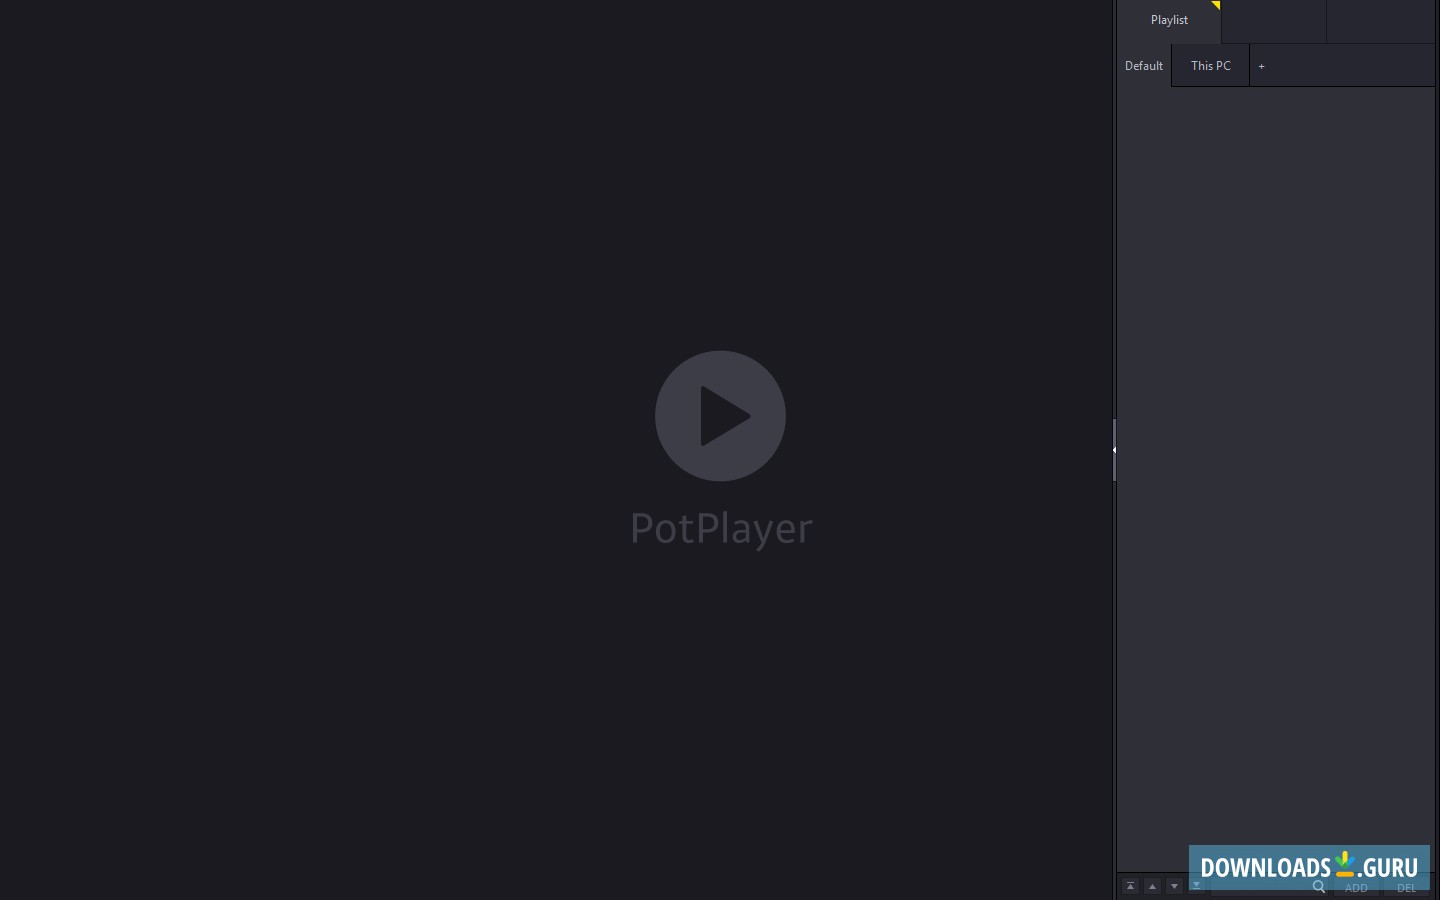 potplayer download for windows 10